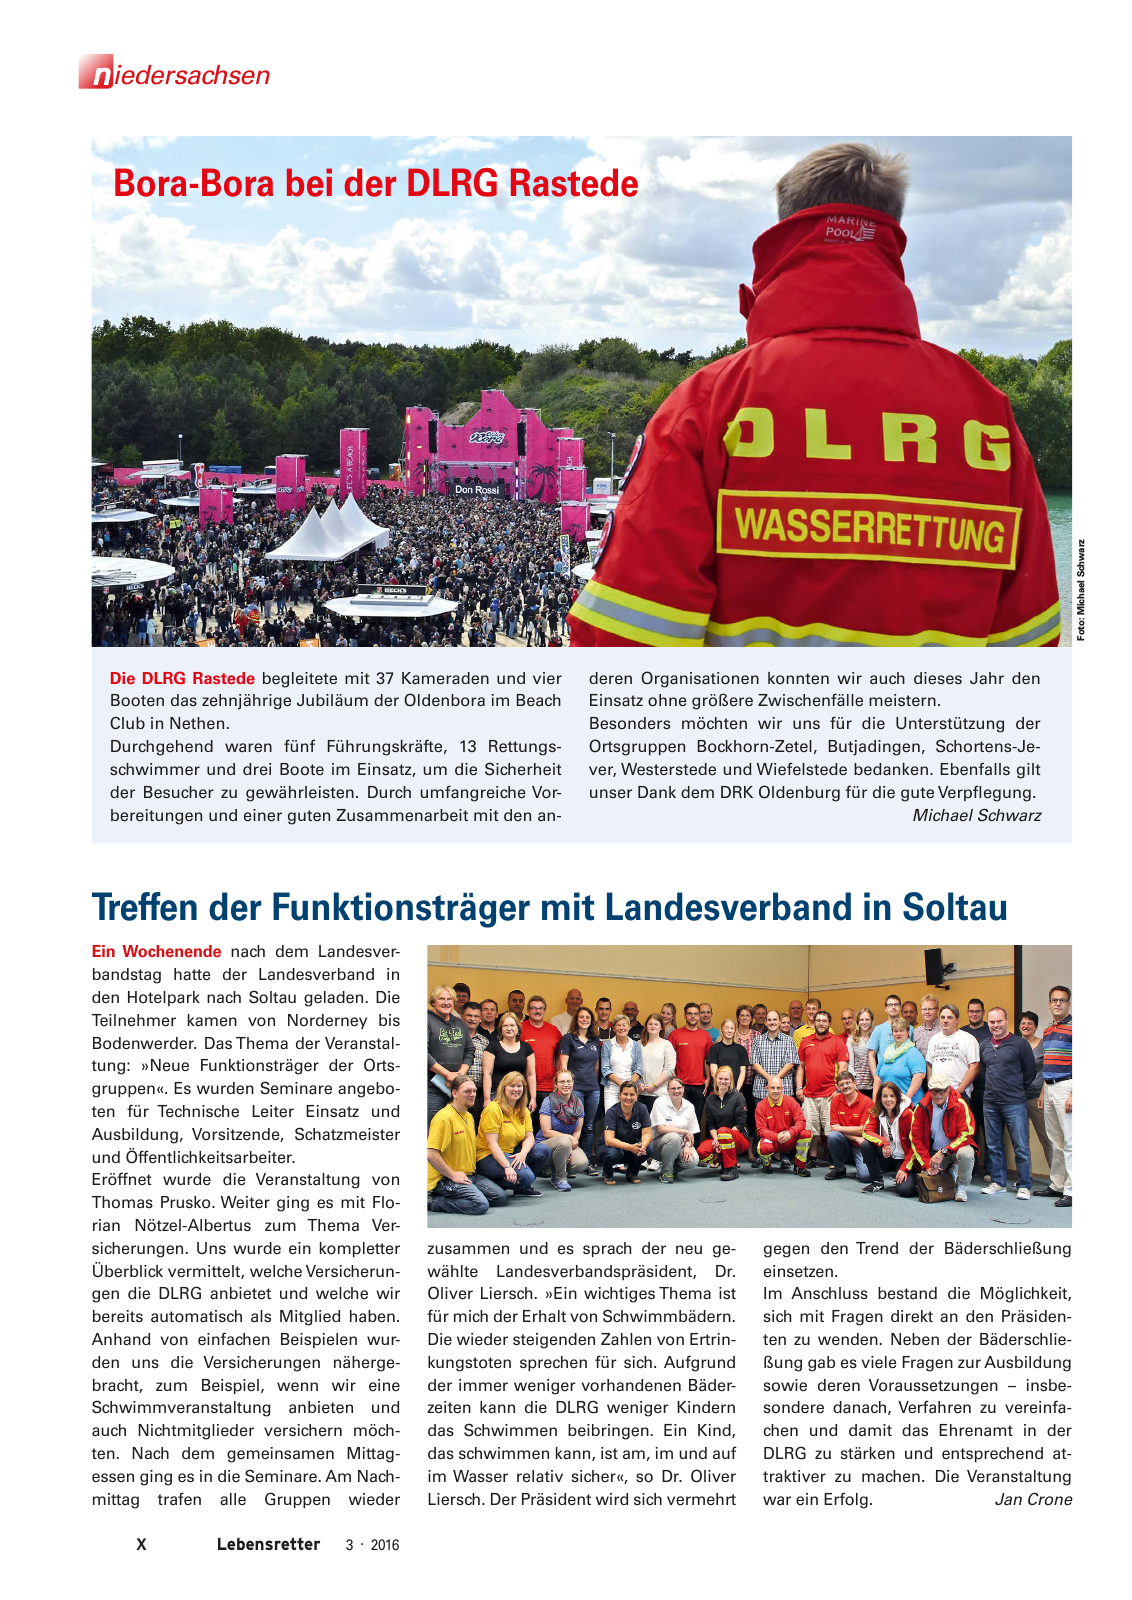 Vorschau Lebensretter 3/2016 - Regionalausgabe Niedersachsen Seite 12